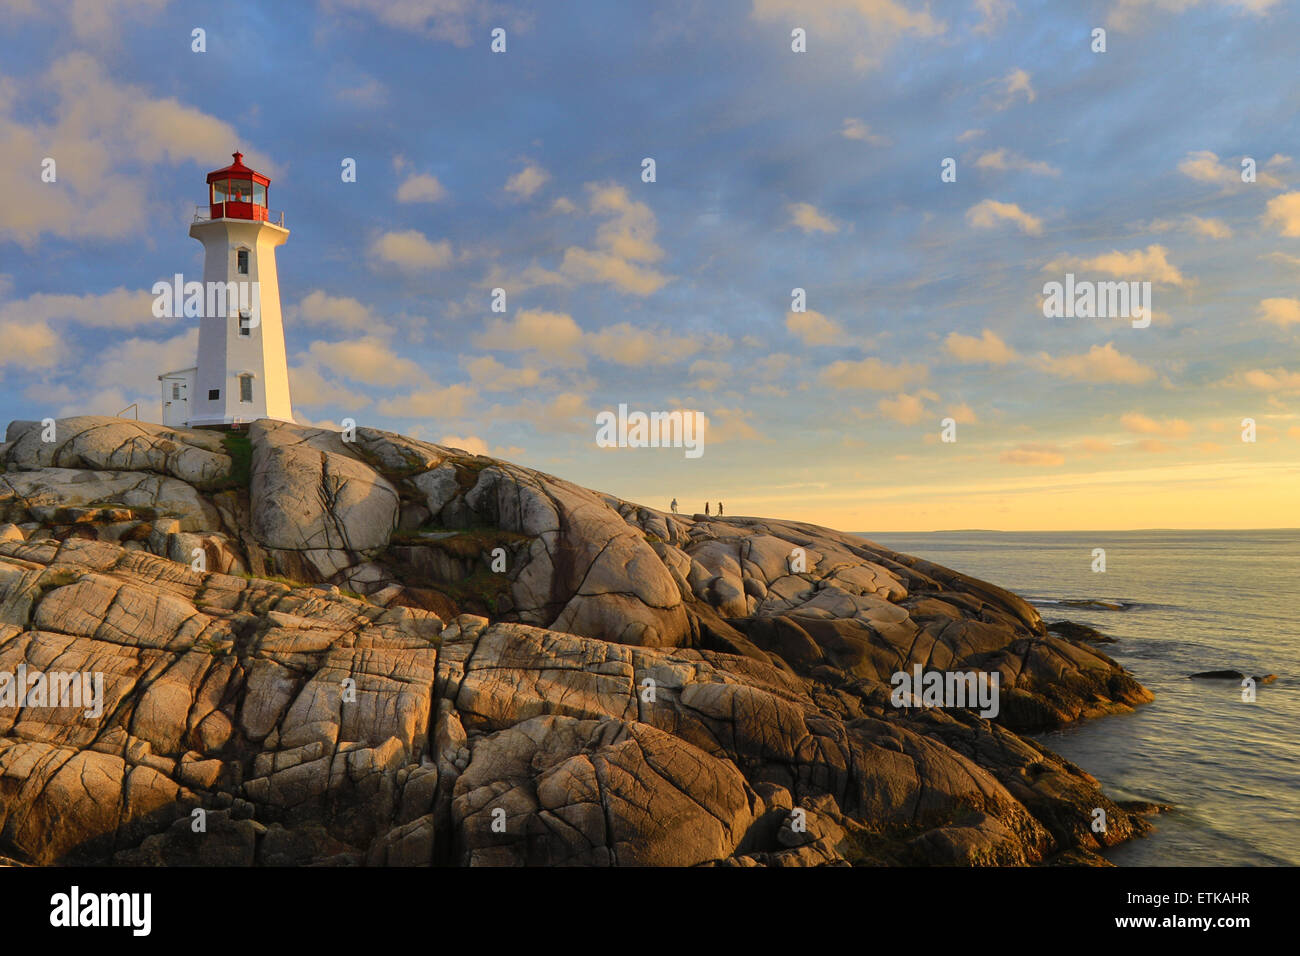 Le phare de Peggy's Cove, Light House, Peggy's Cove en Nouvelle-Écosse, au Canada avec des couleurs de ciel coucher de soleil paysage. Banque D'Images